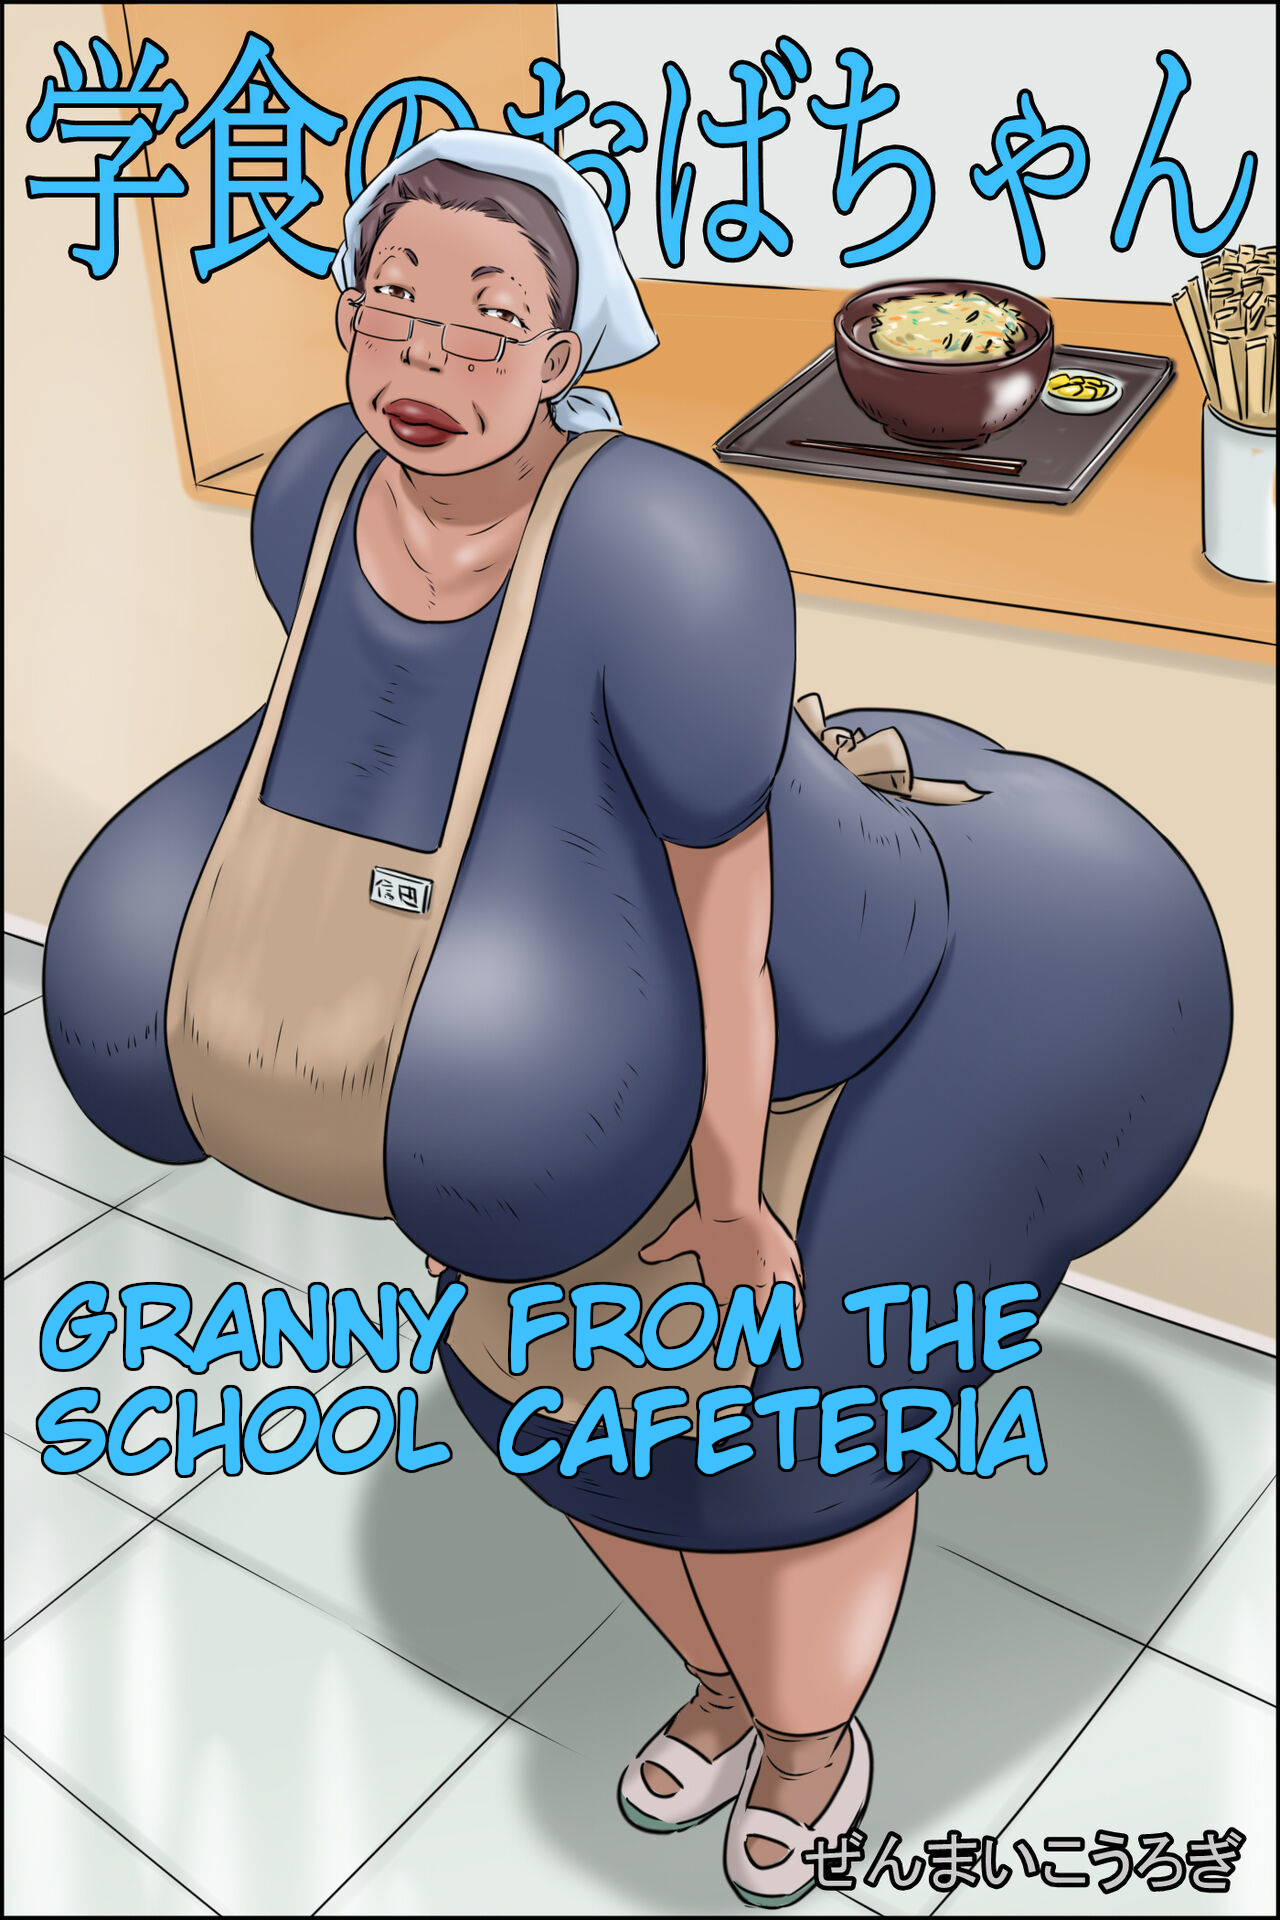 Comic porn granny